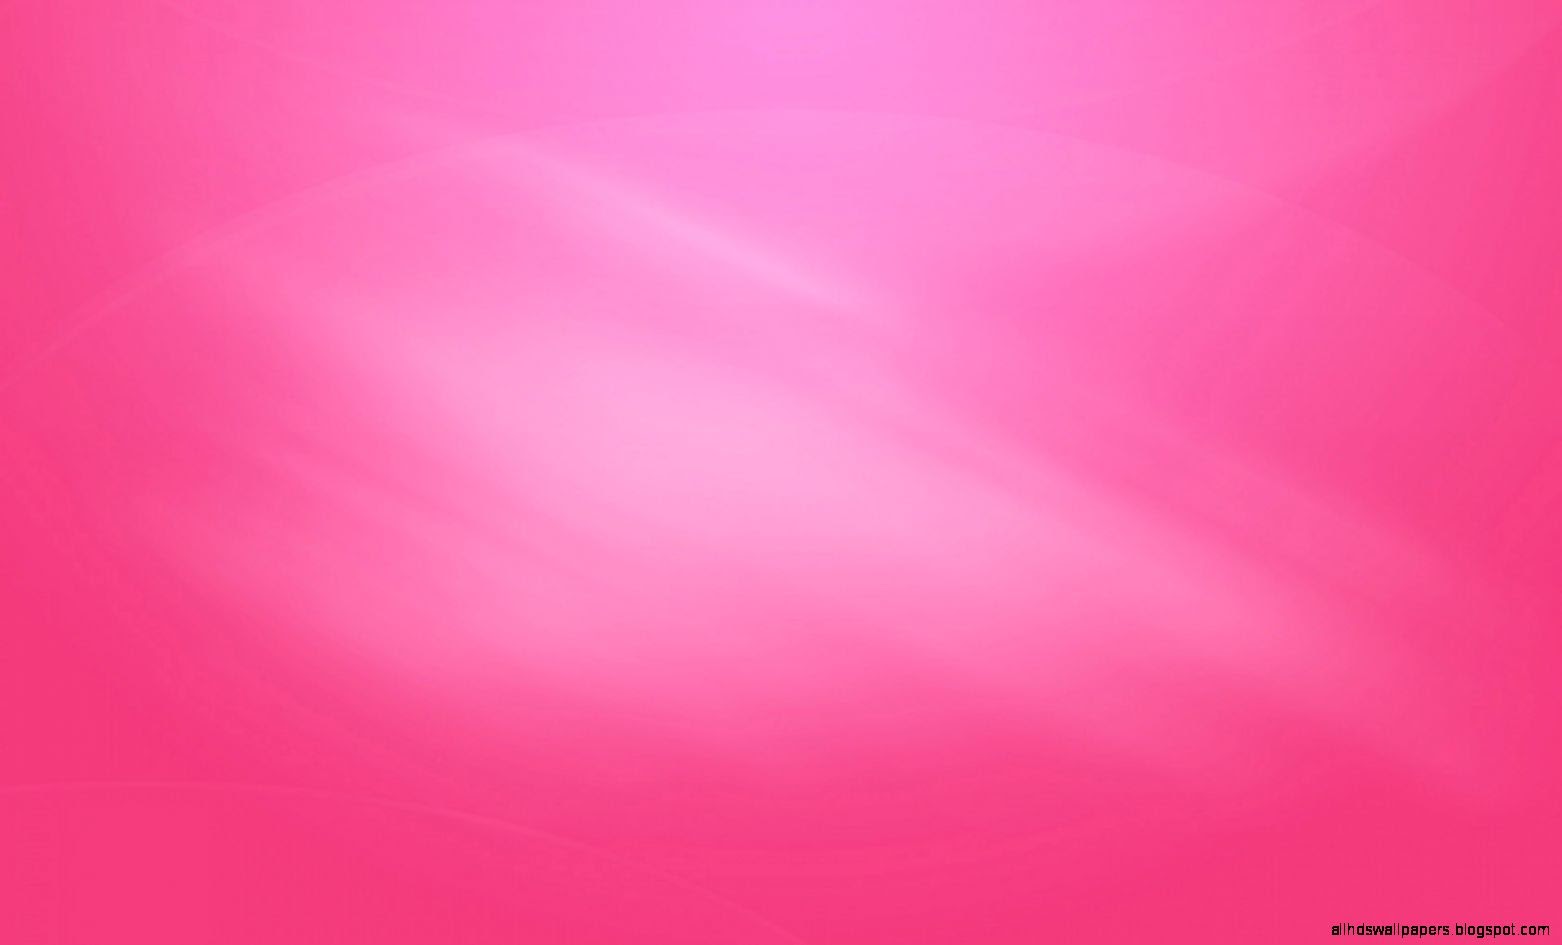 Pink Wallpaper High Resolution All HD